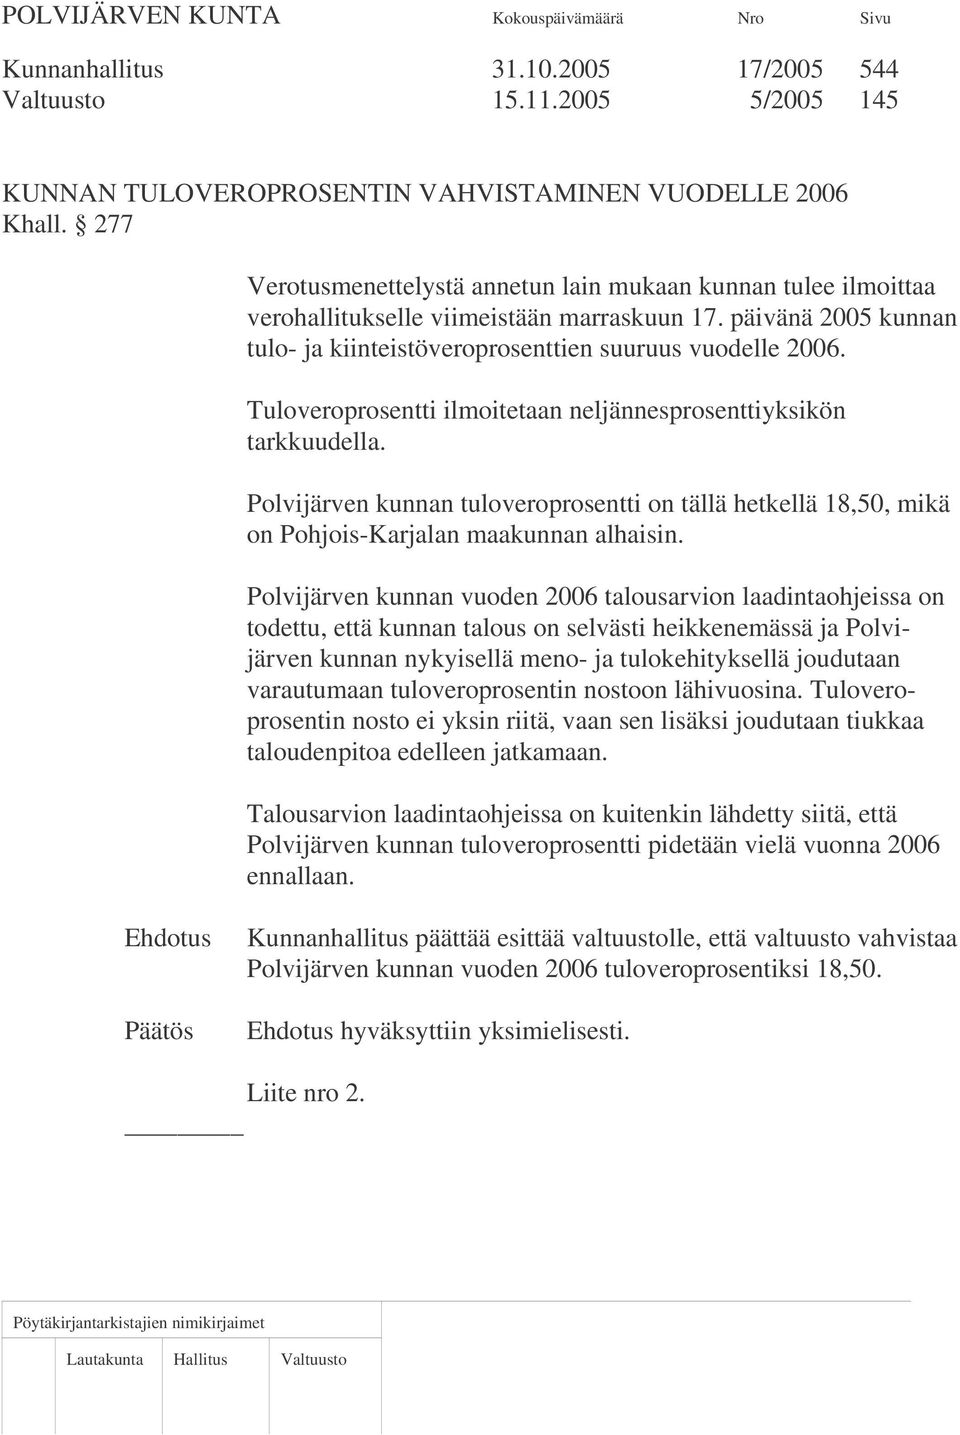 Tuloveroprosentti ilmoitetaan neljännesprosenttiyksikön tarkkuudella. Polvijärven kunnan tuloveroprosentti on tällä hetkellä 18,50, mikä on Pohjois-Karjalan maakunnan alhaisin.